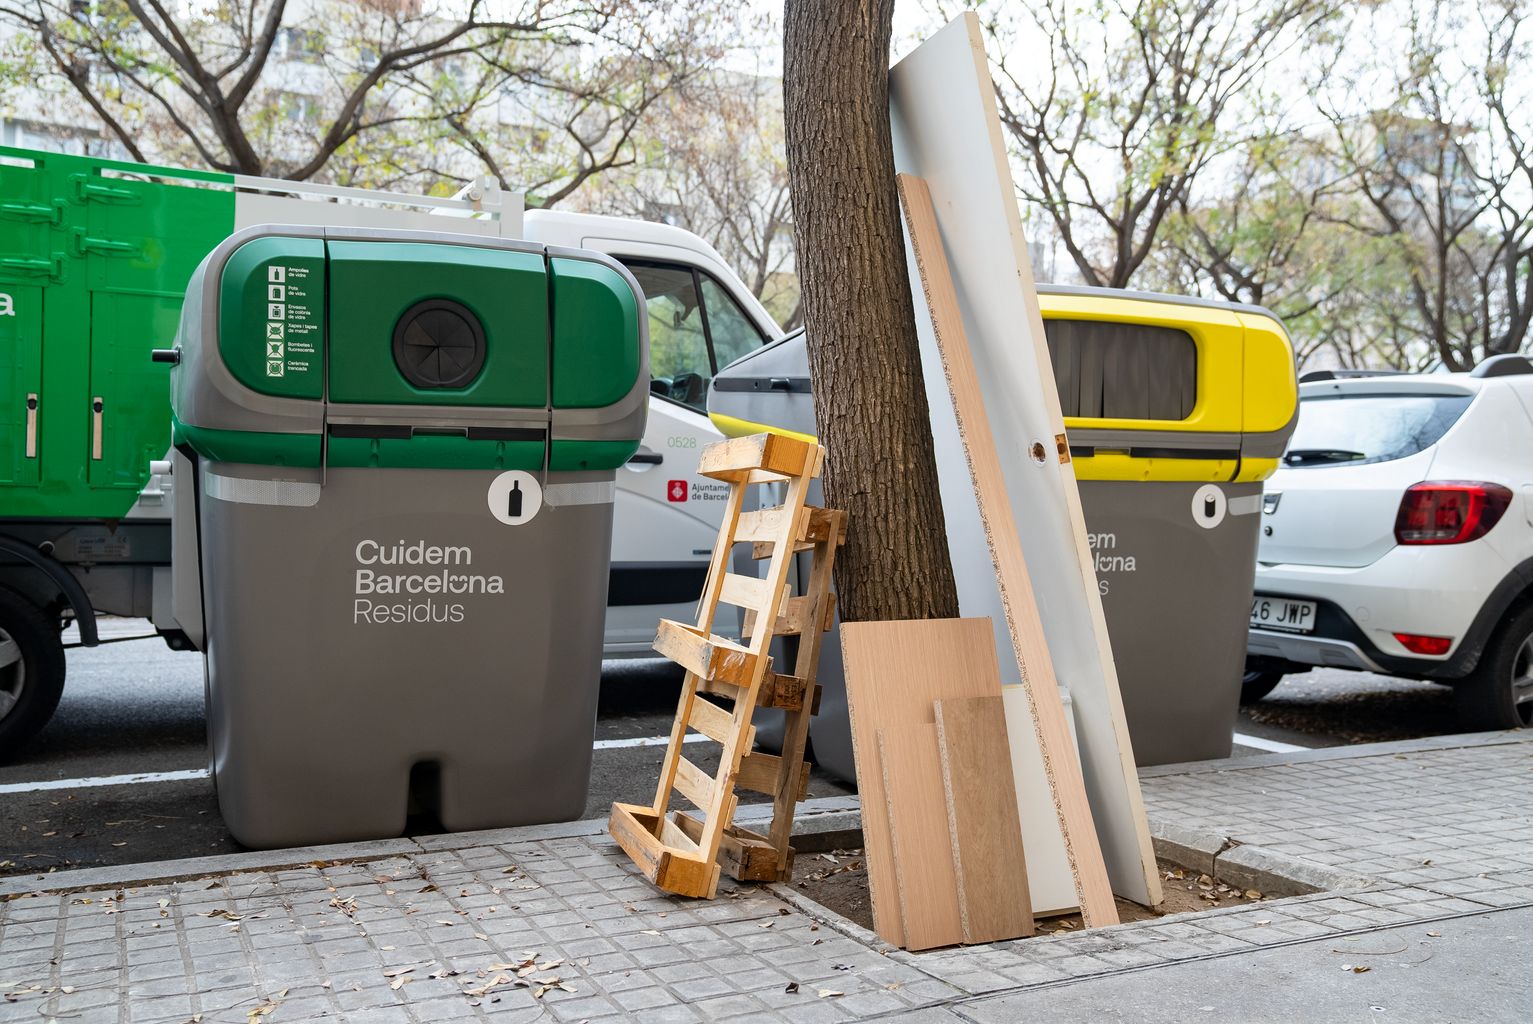 Puerta, estantes i palés de madera abandonados en un alcorque al lado de unos contenedores de Cuidem Barcelona Residus